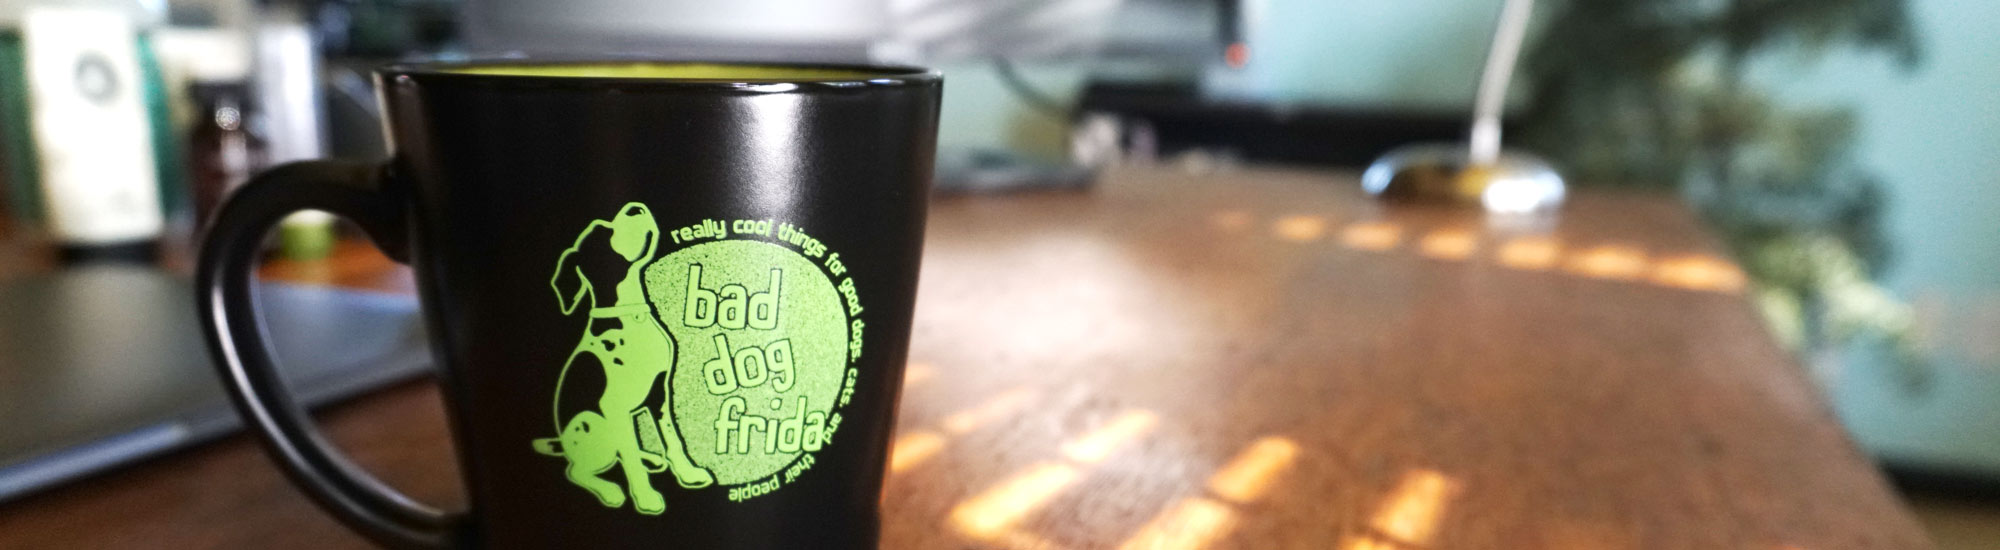 Photo of Bad Dog Frida logo mug on desk